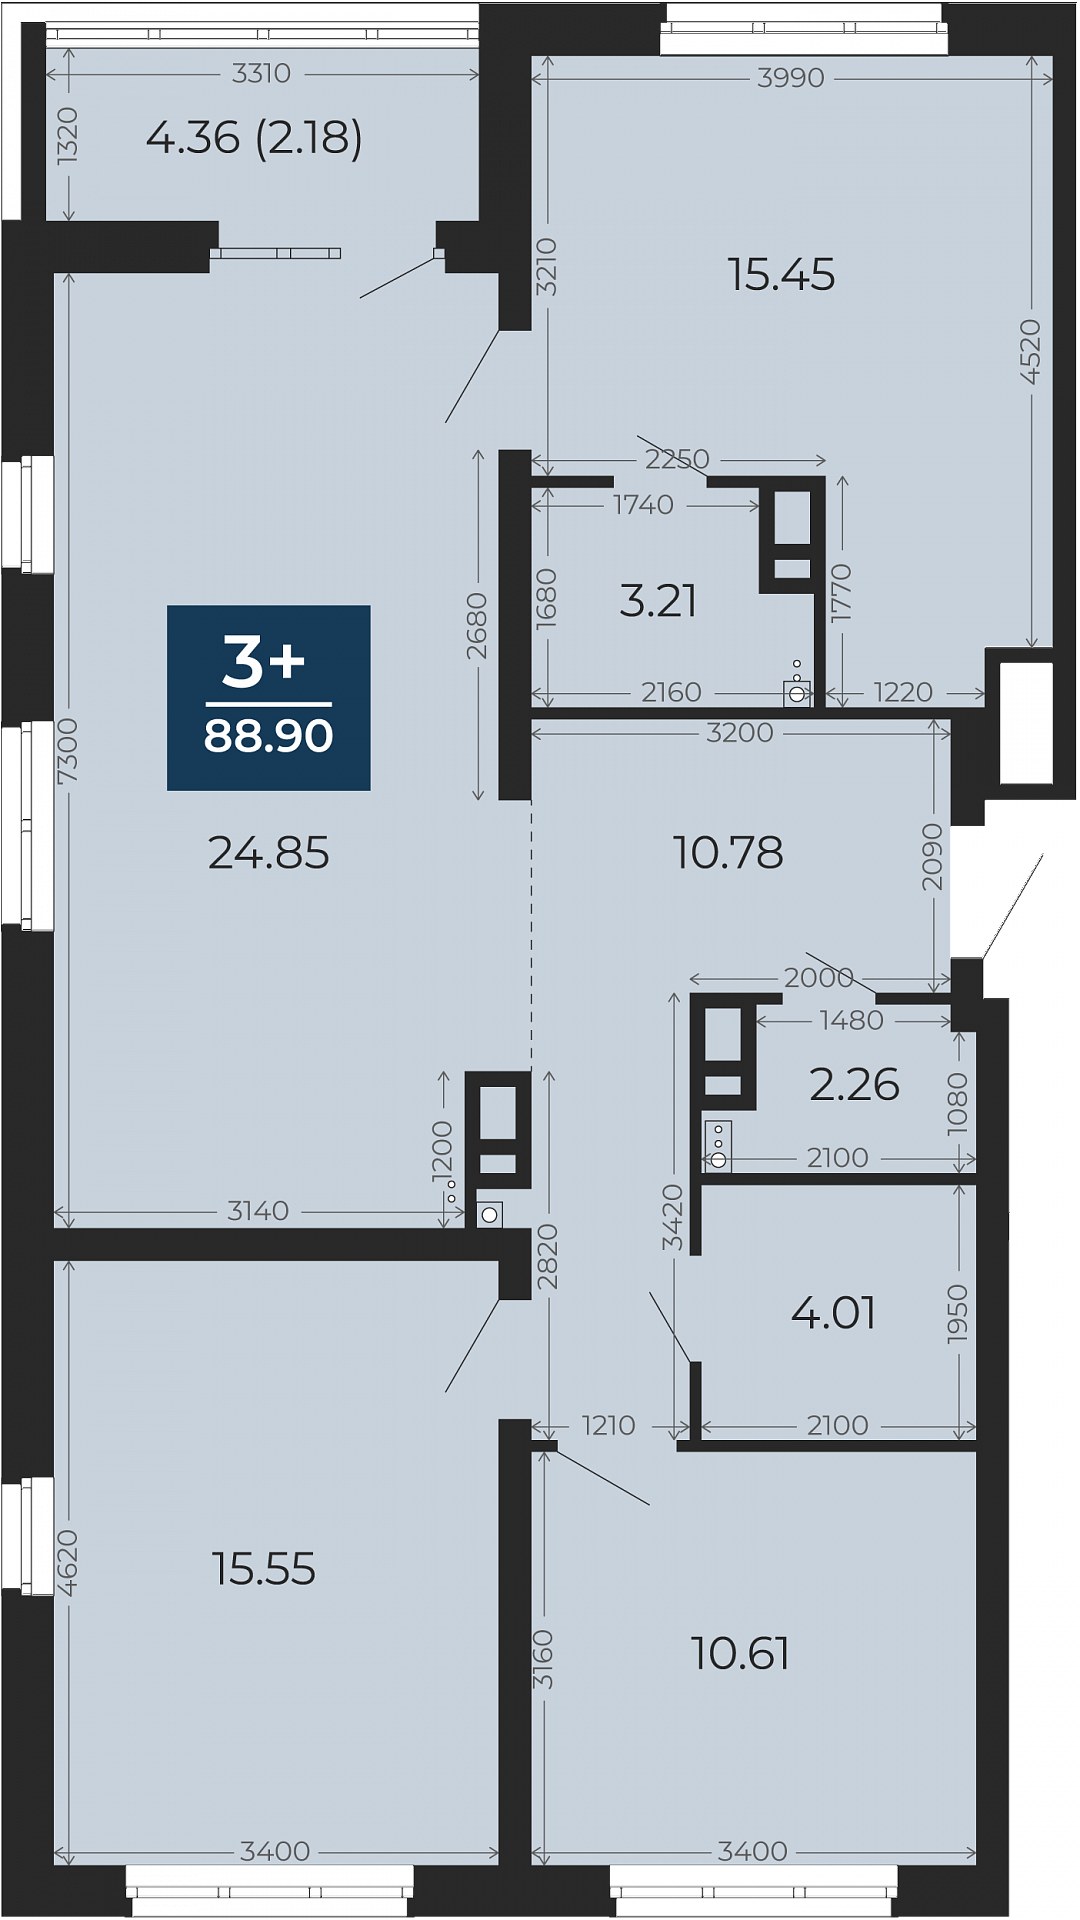 Квартира № 18, 3-комнатная, 88.9 кв. м, 4 этаж